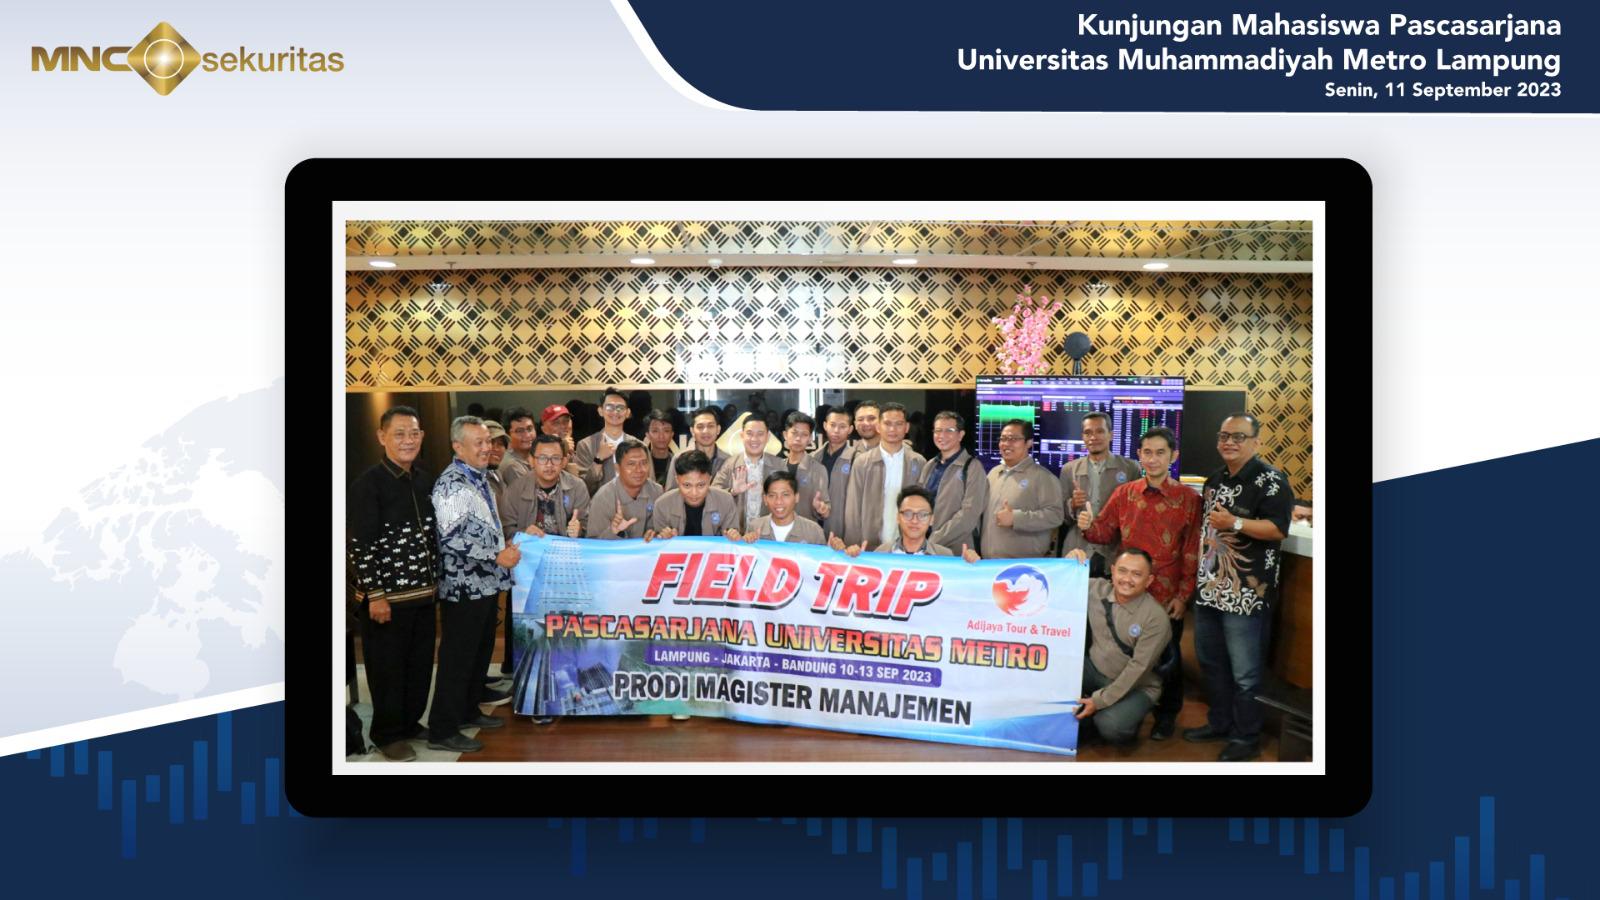 Aktif Edukasi Lewat Galeri Investasi, MNC Sekuritas Sambut Kunjungan Mahasiswa Universitas Muhammadiyah Metro Lampung